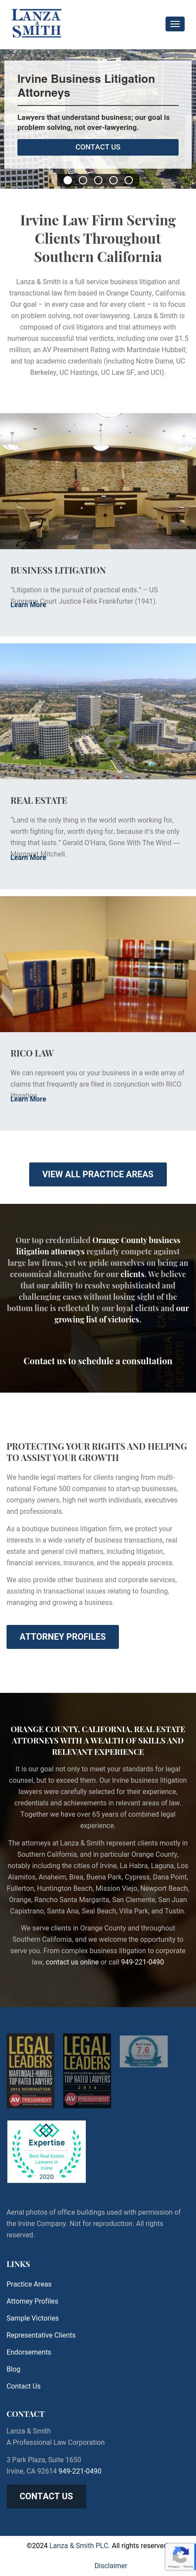 Lanza & Smith PLC - Irvine CA Lawyers